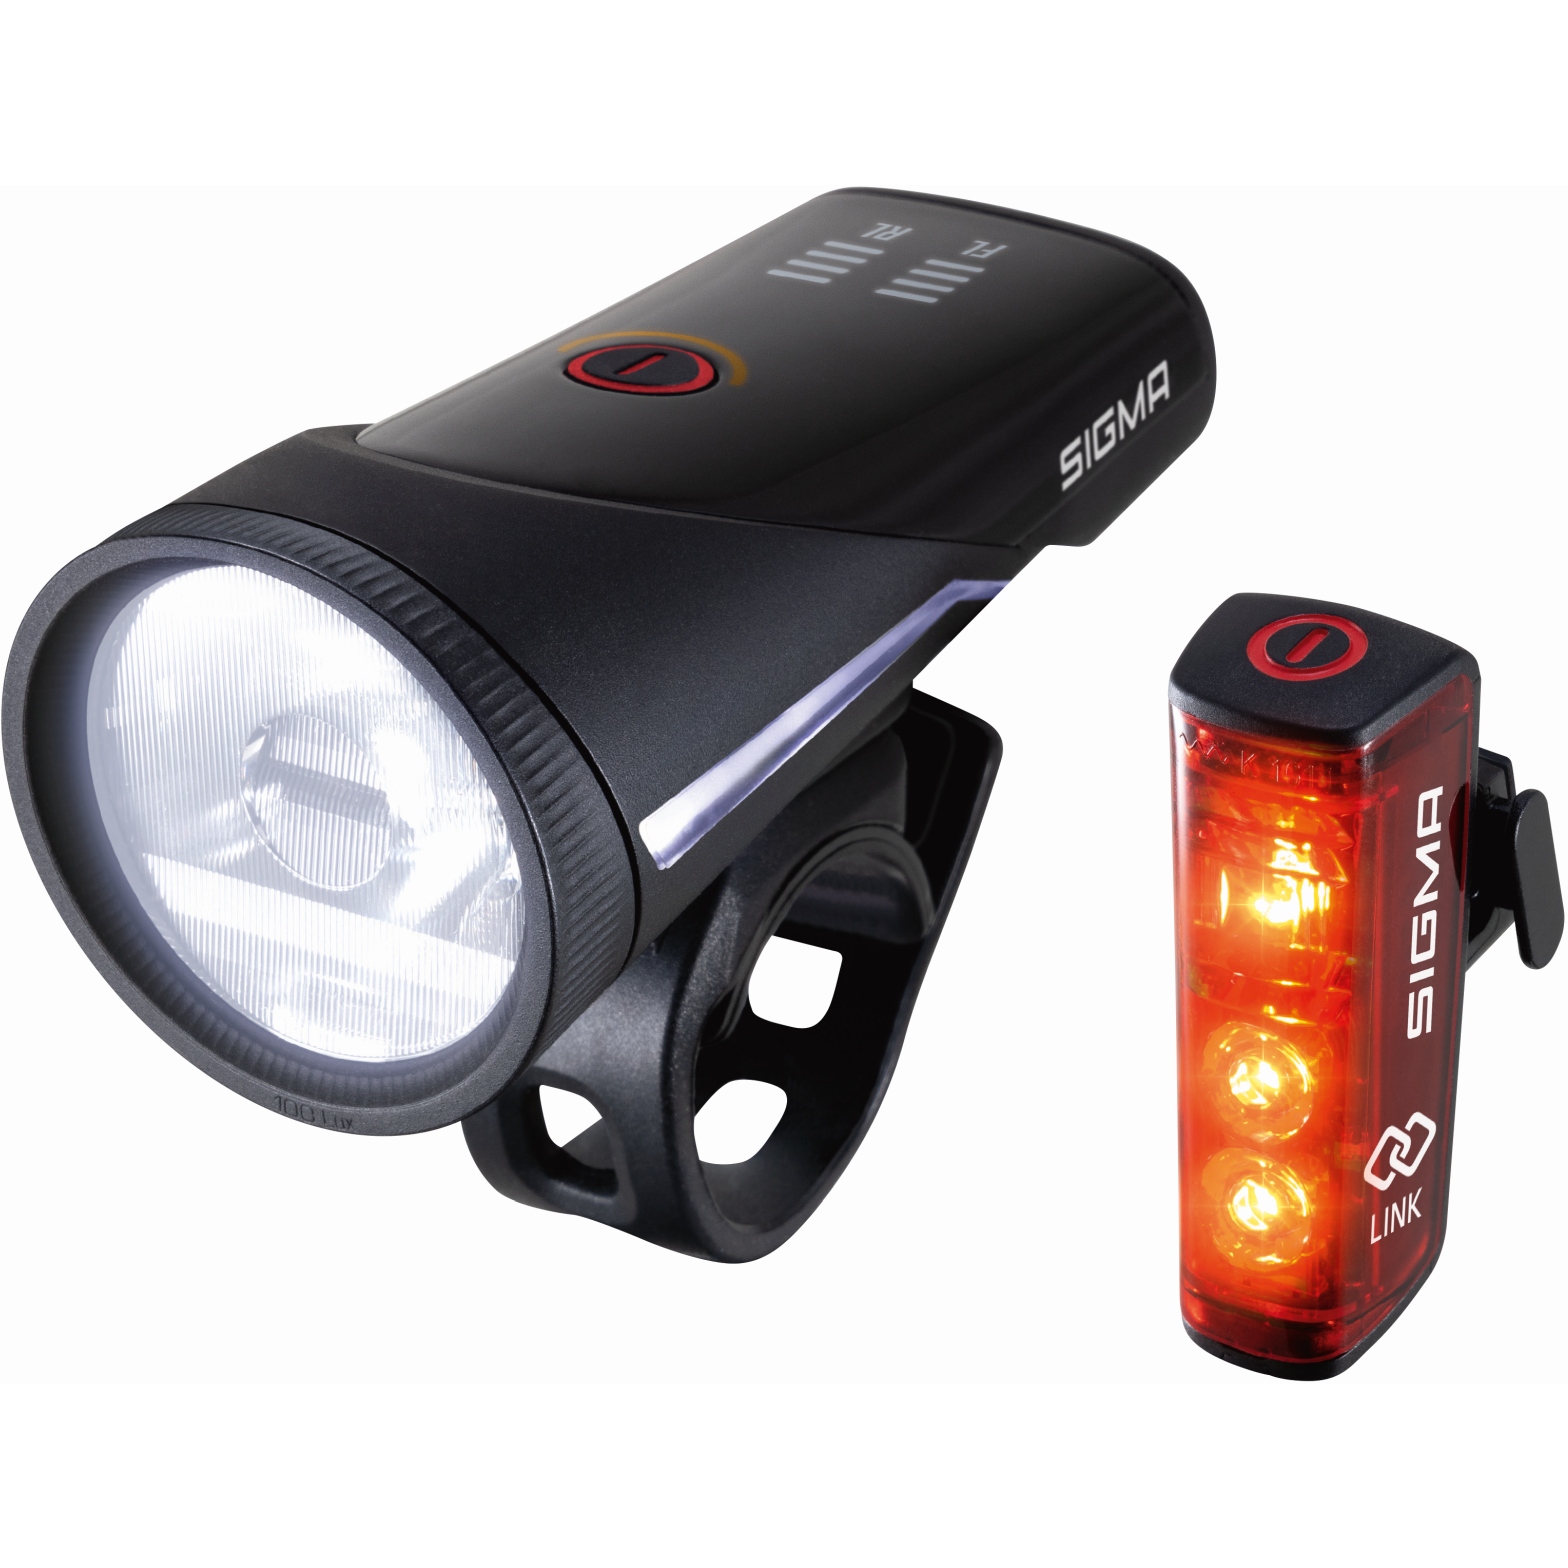 Productfoto van Sigma Sport Aura 100 Set / Blaze Link - Fietslamp Vooraan + Fietslamp Achteraan